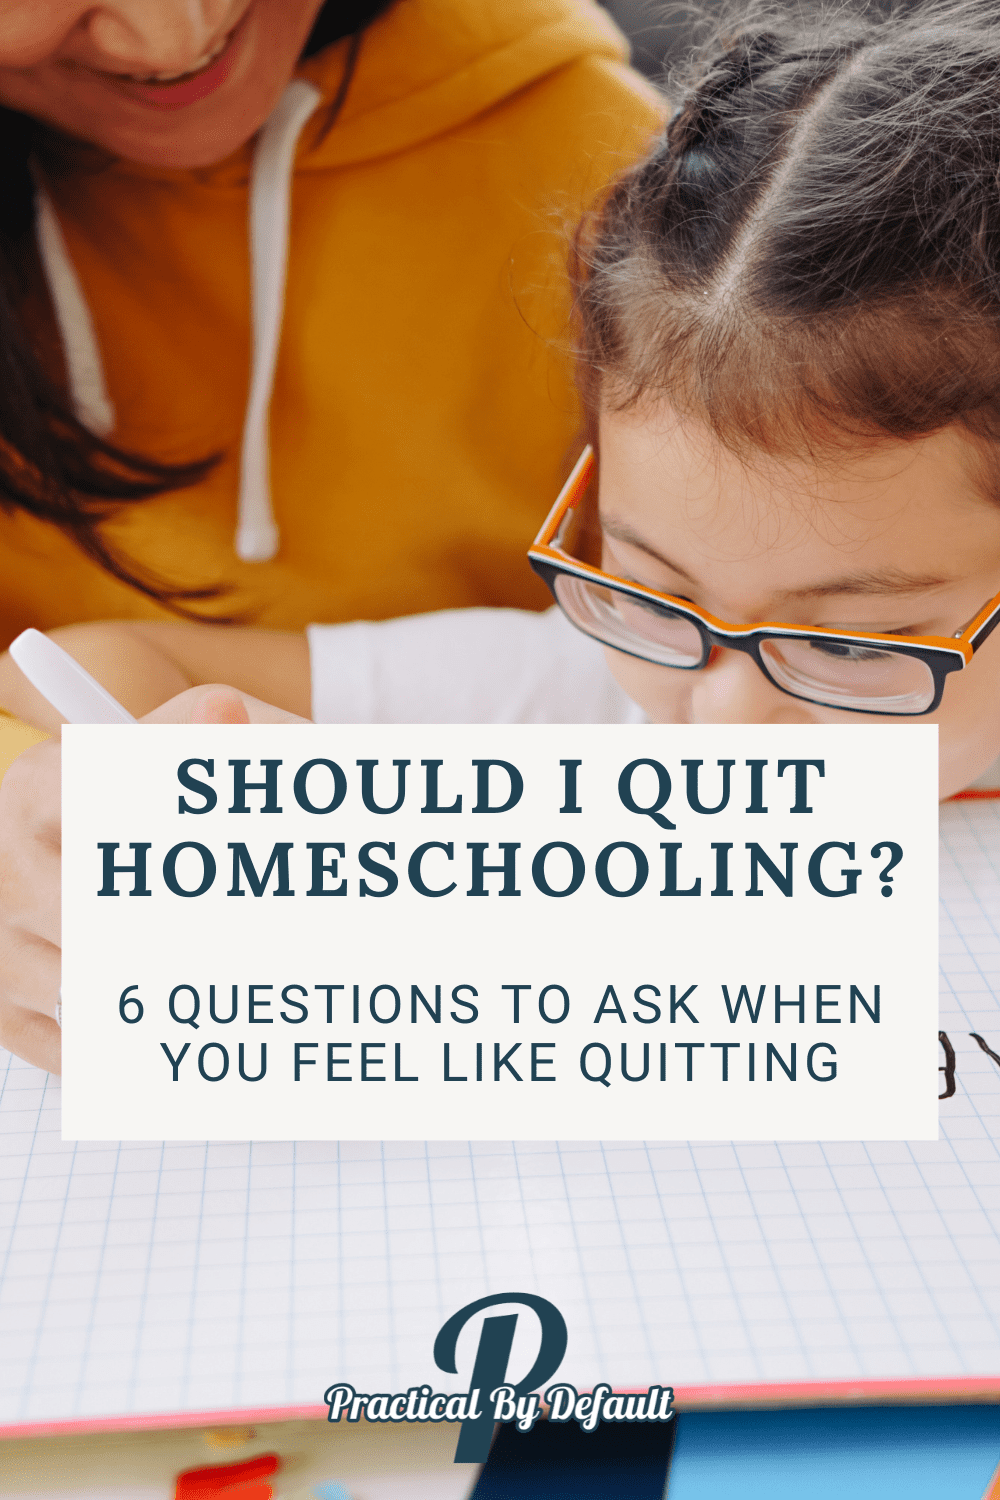 Should I Quit Homeschooling?